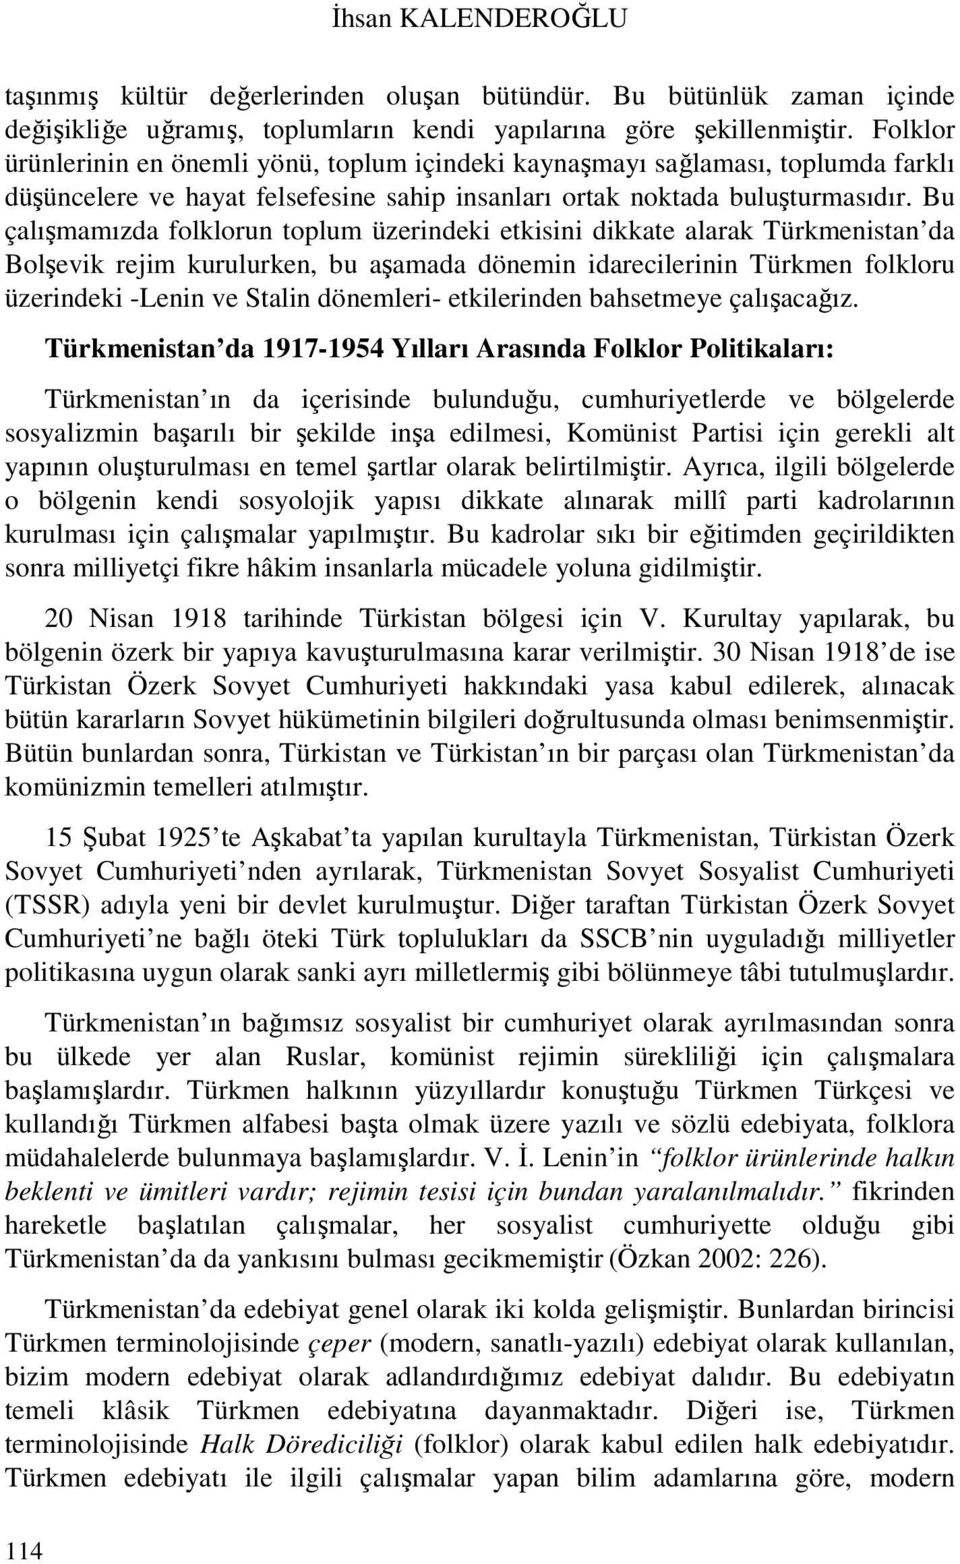 Bu çalışmamızda folklorun toplum üzerindeki etkisini dikkate alarak Türkmenistan da Bolşevik rejim kurulurken, bu aşamada dönemin idarecilerinin Türkmen folkloru üzerindeki -Lenin ve Stalin